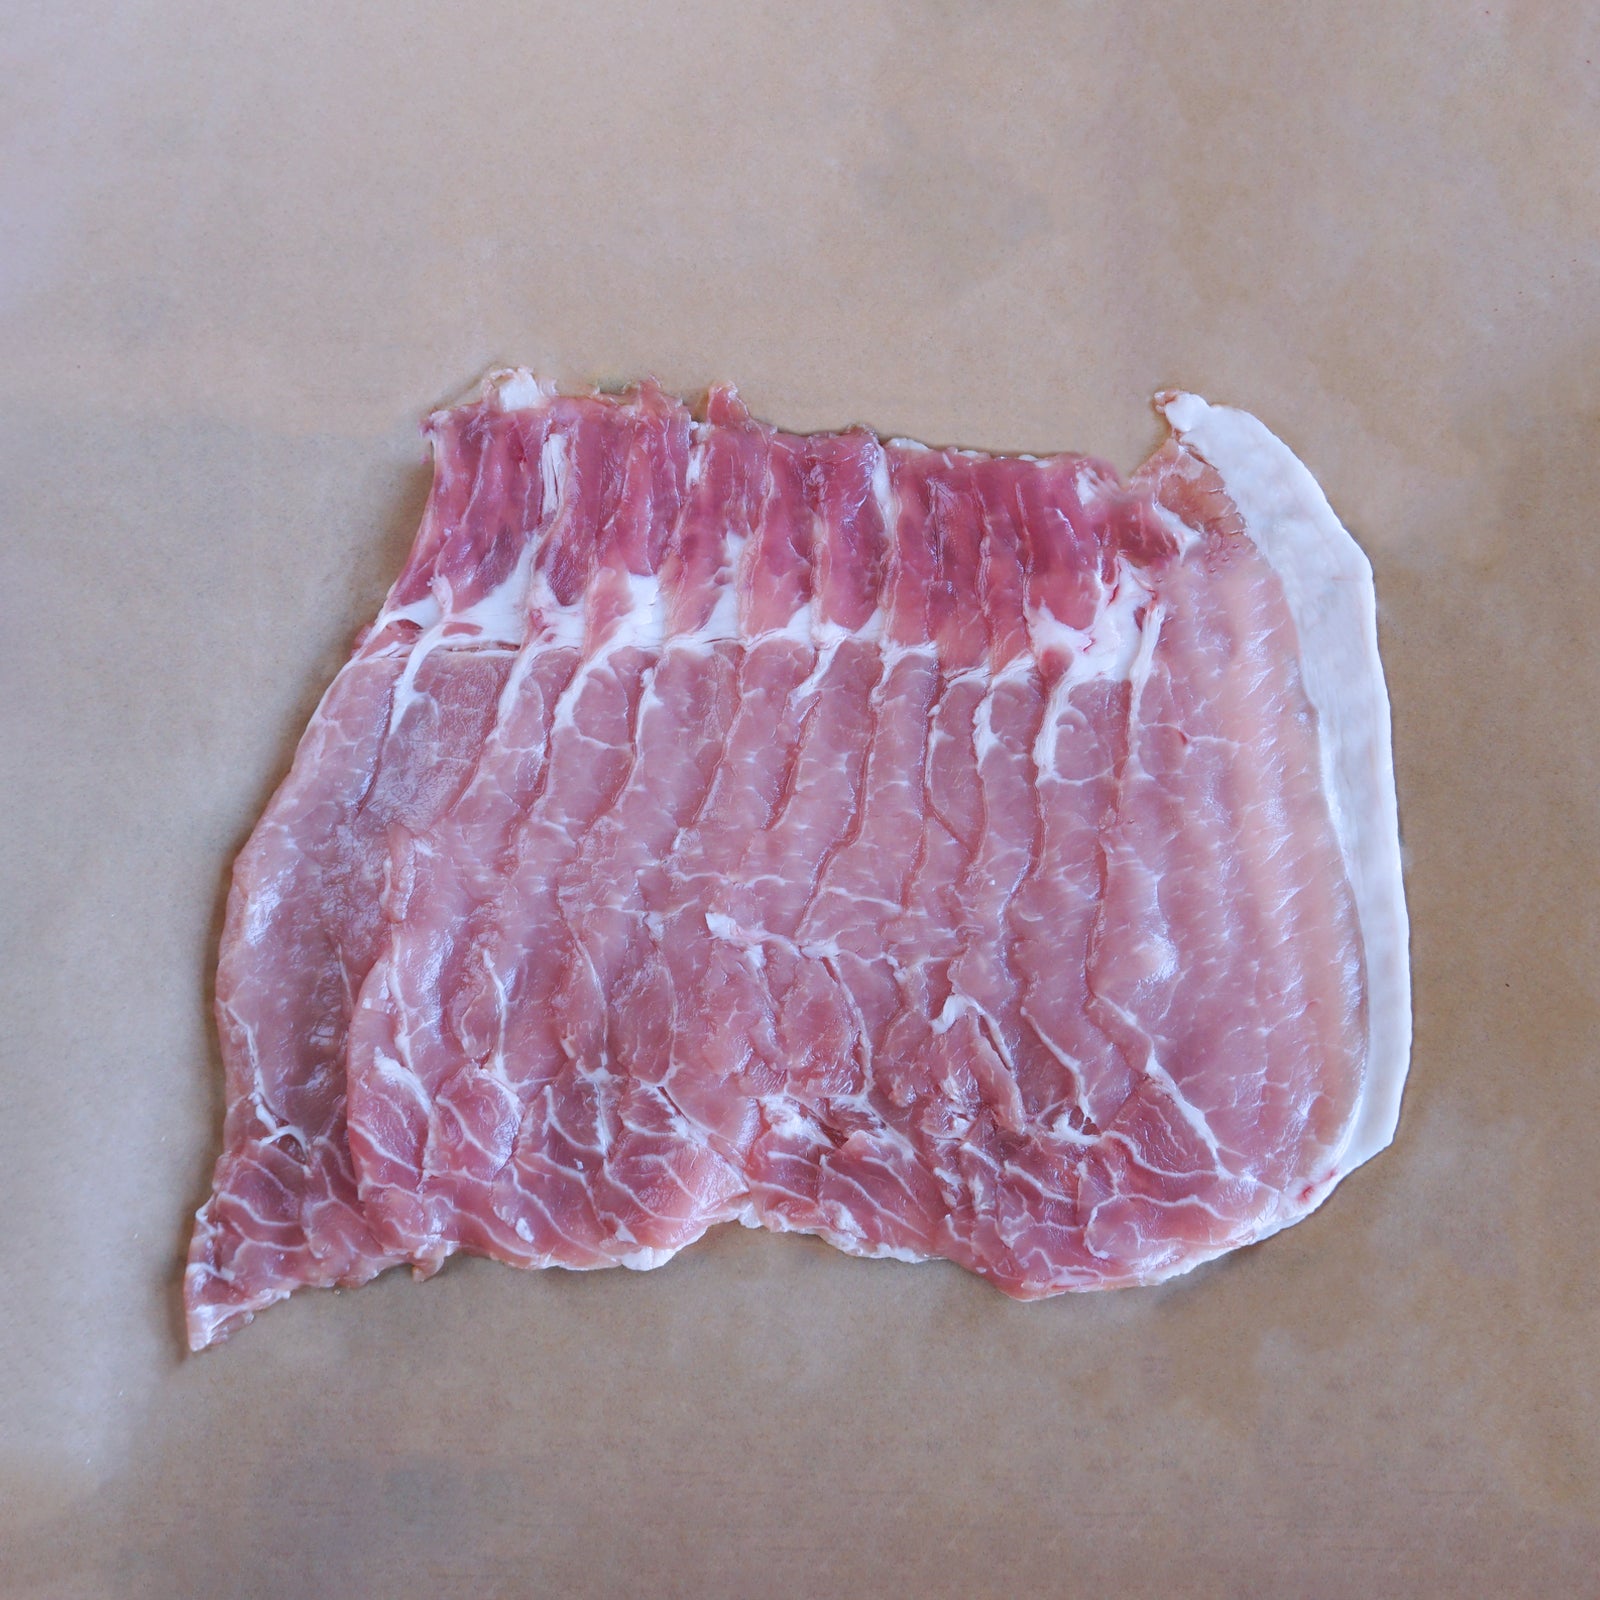 Free-Range Pork Loin Slices for Shabu Shabu (300g) - Horizon Farms